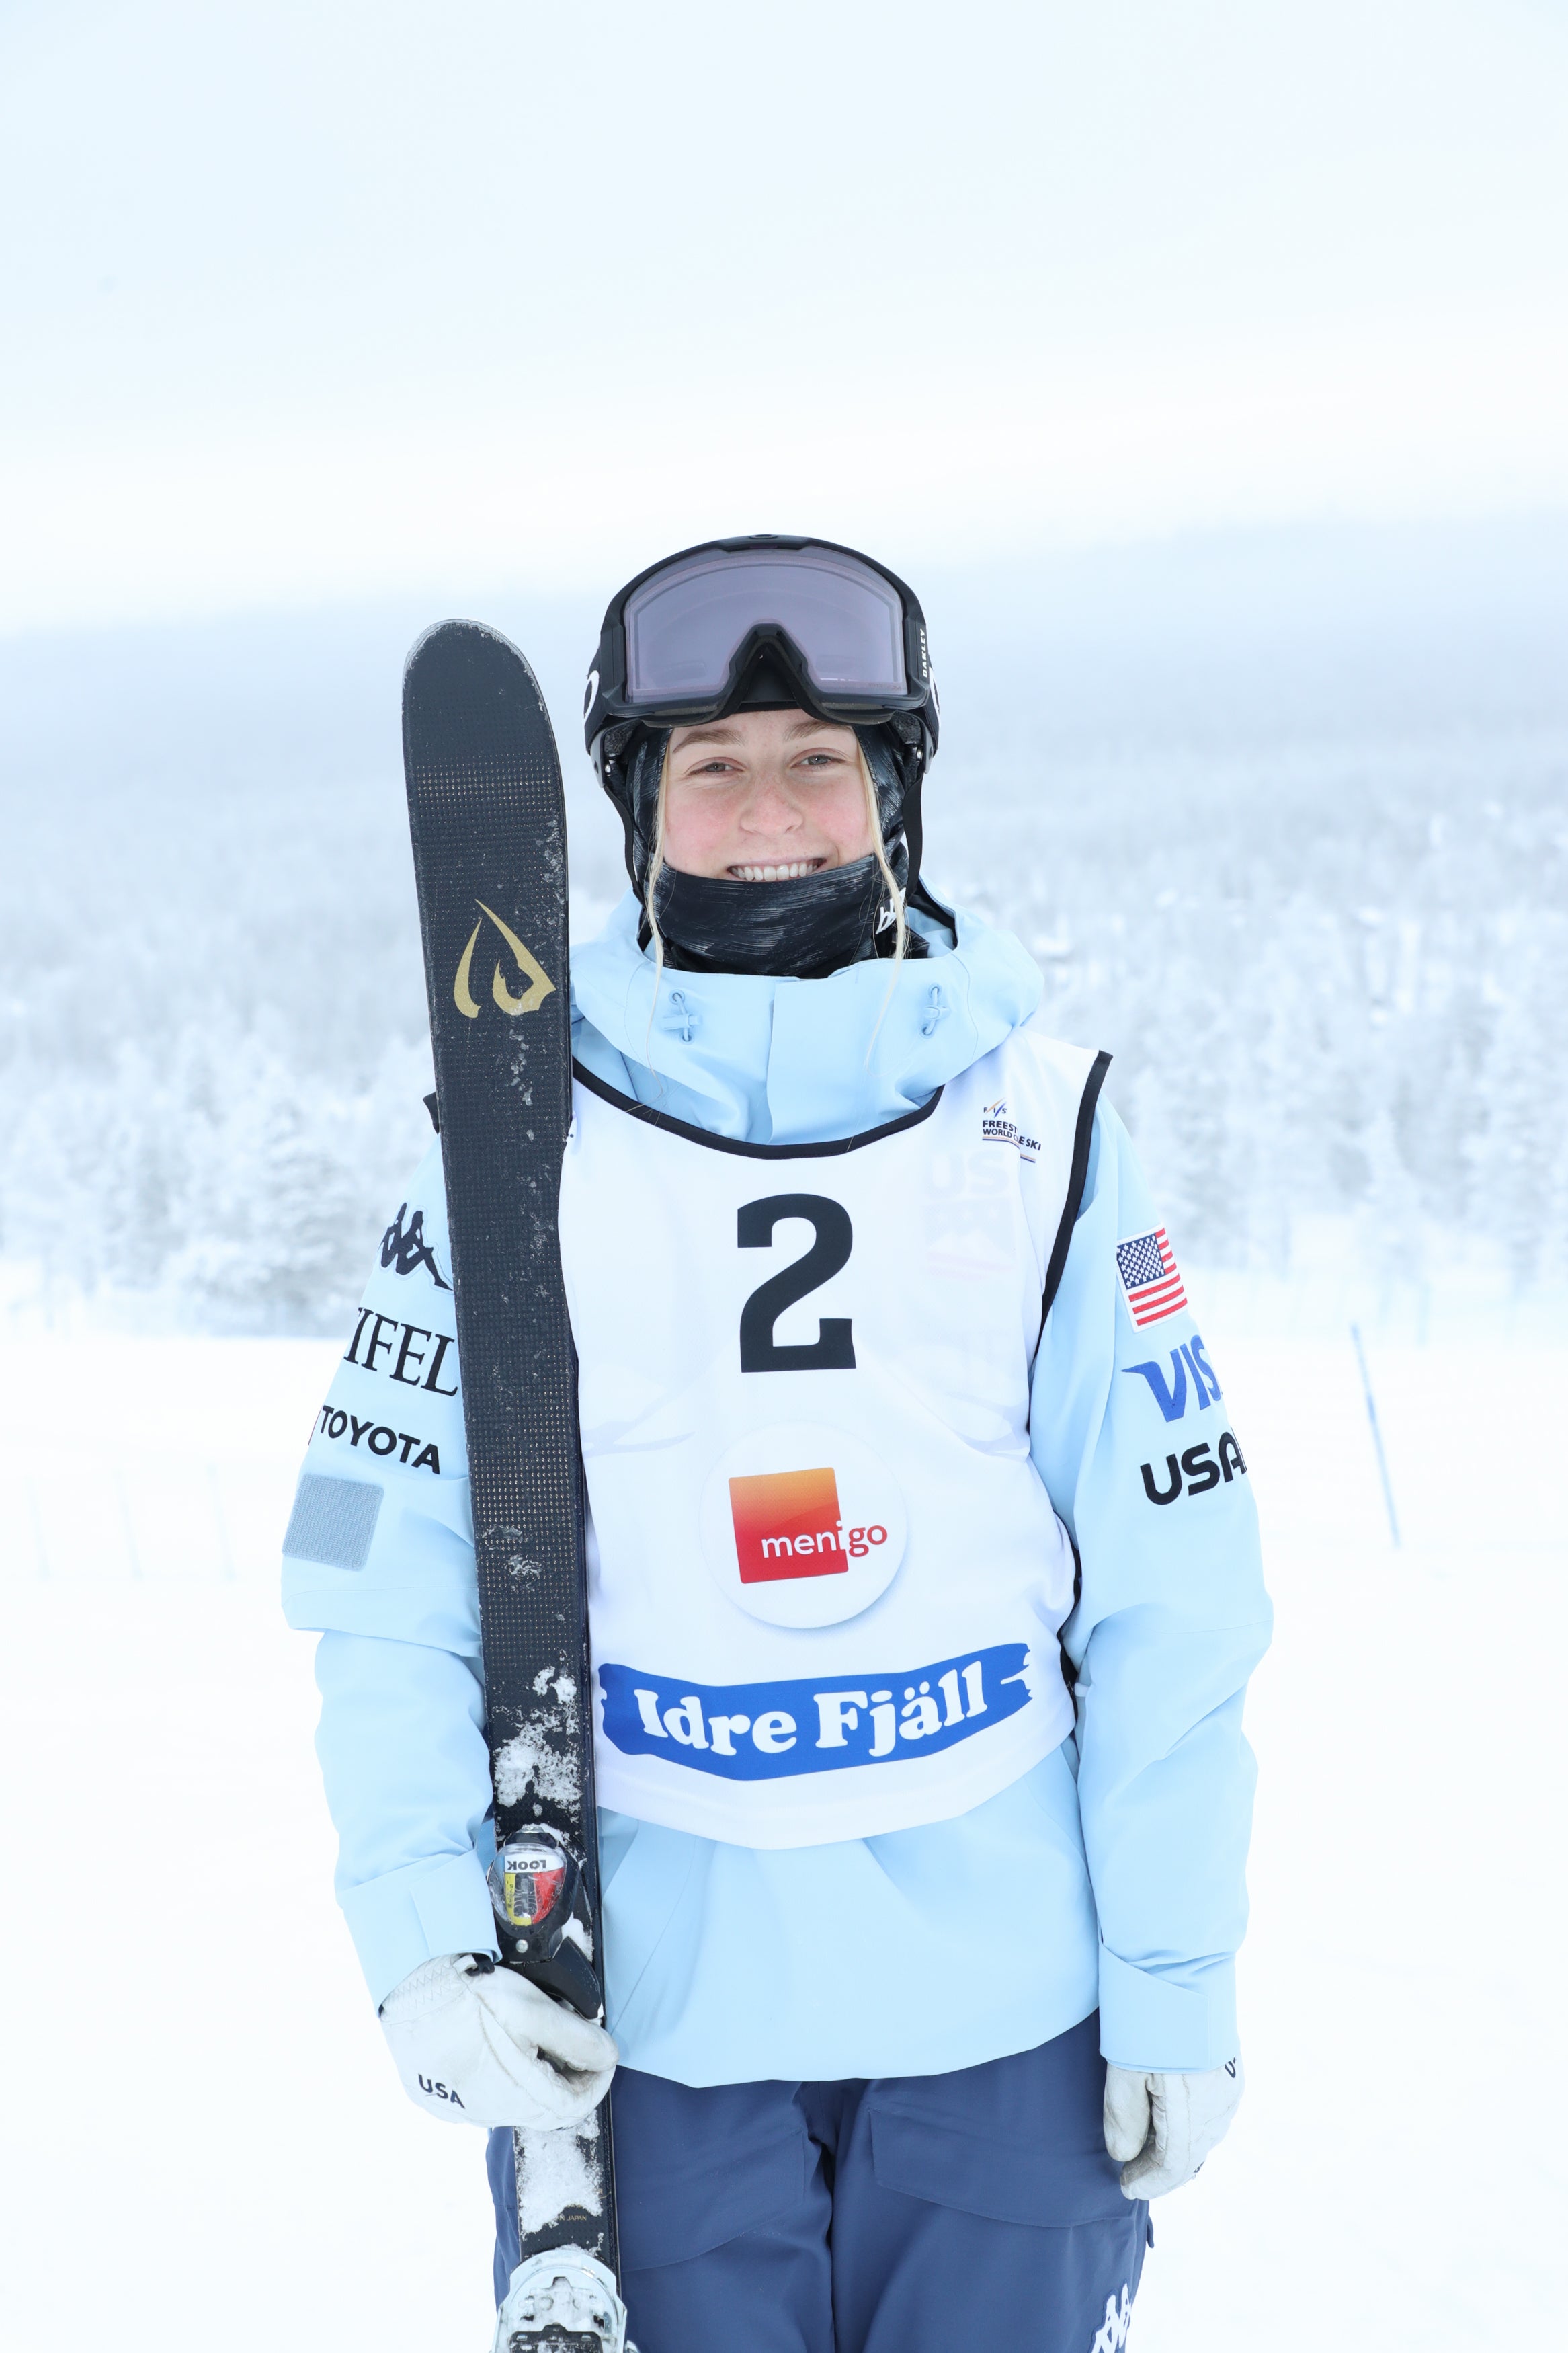 Photo of Elizabeth Lemley - Mogul Skier